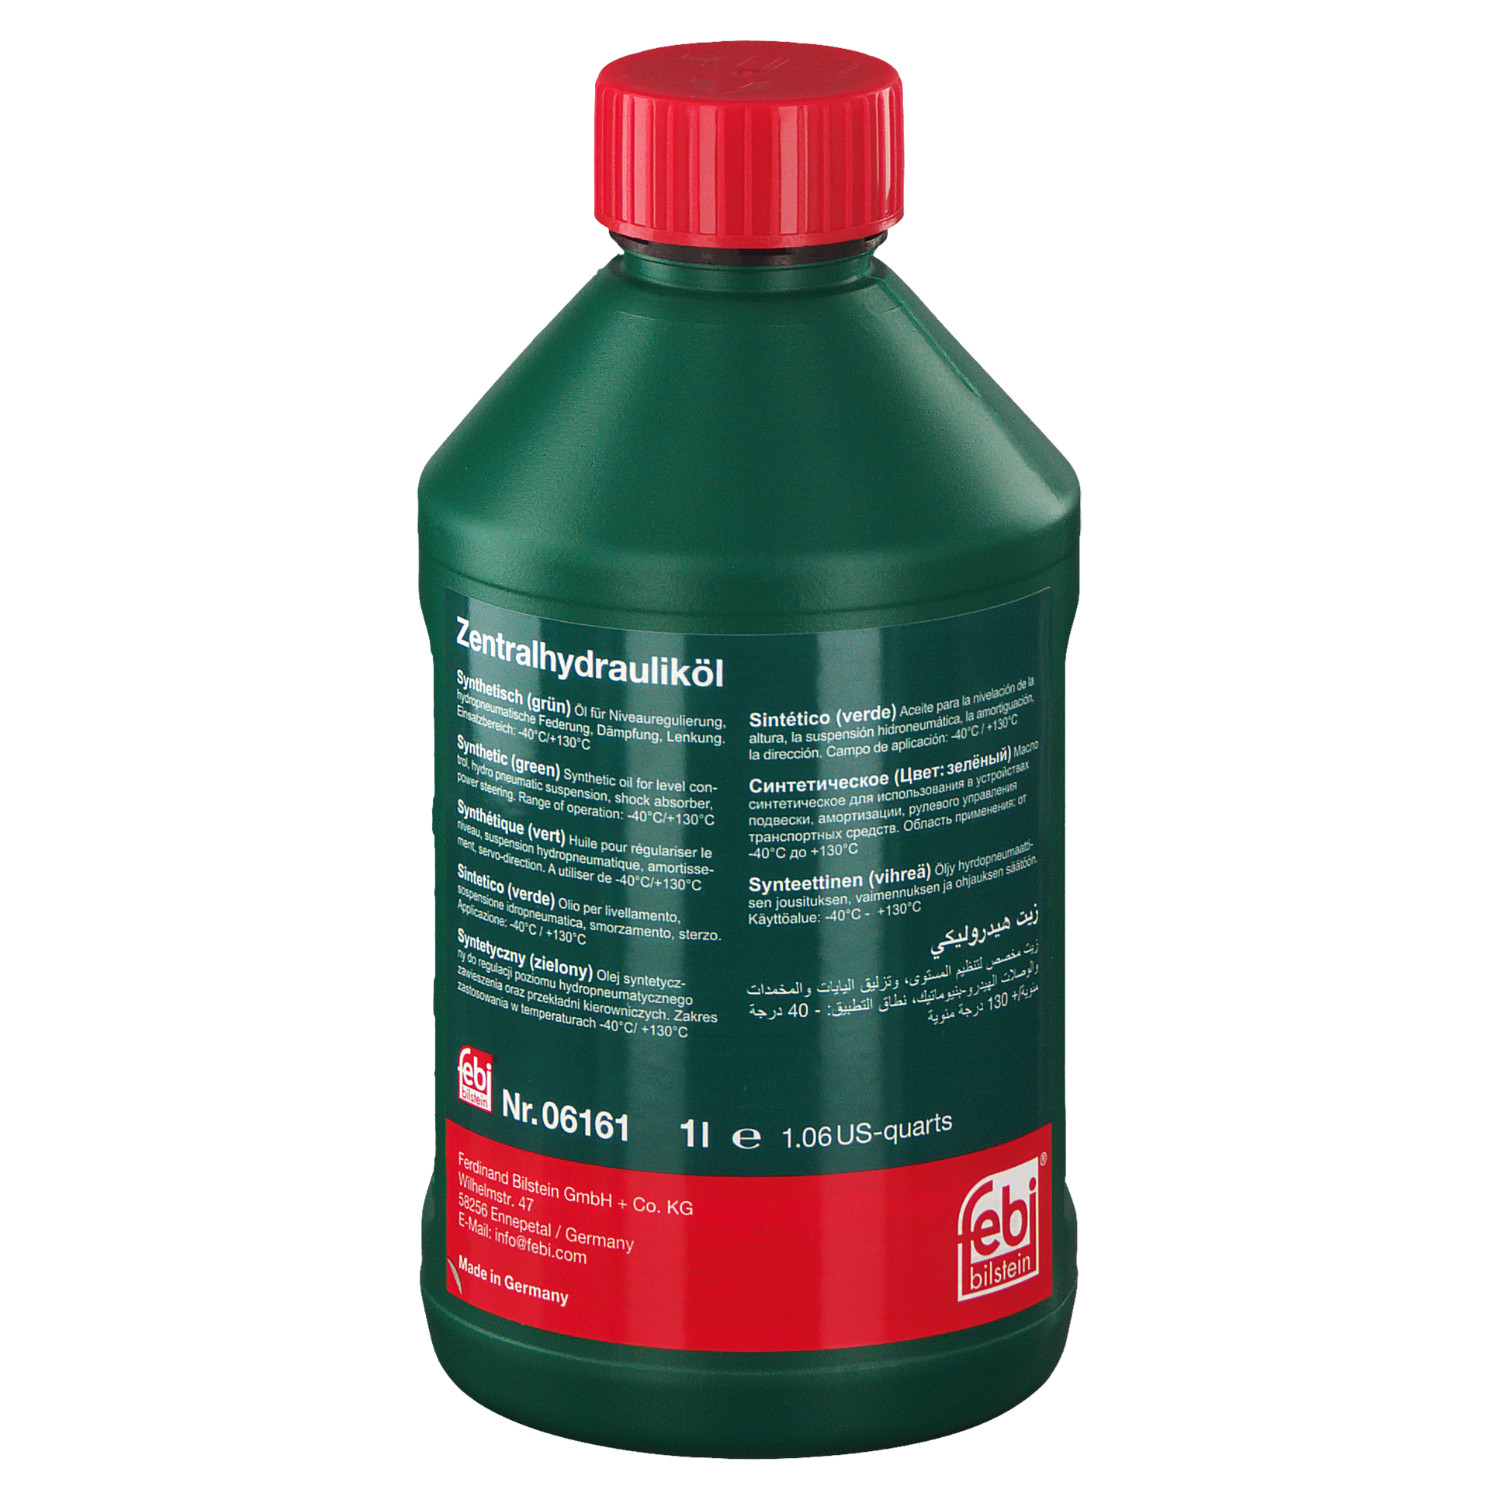 Жидкость гидросистемы CHF 11S синтетическая зеленая 1л - Febi 06161